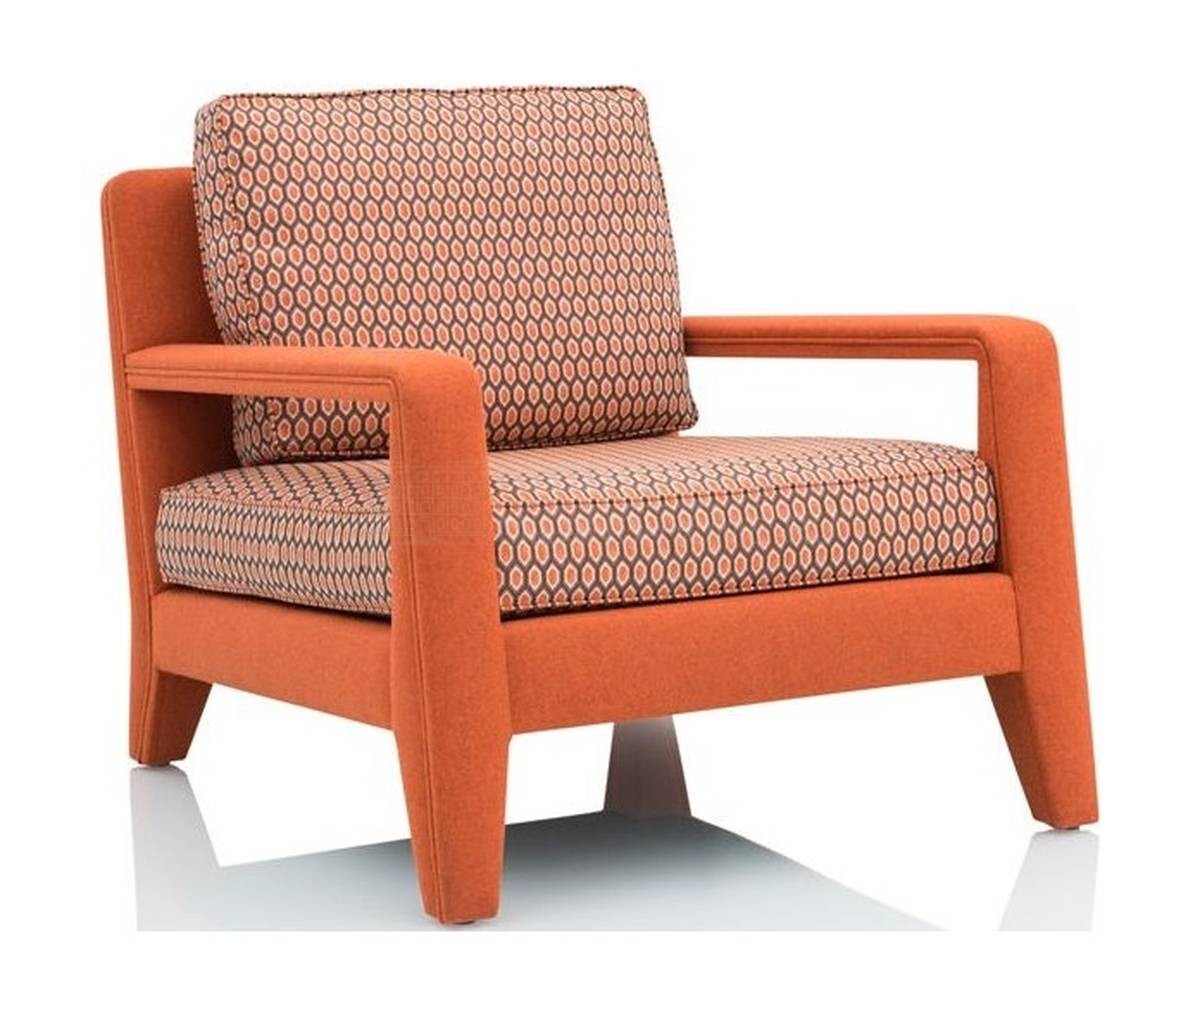 Кресло Essentiel Ouvert/armchair из Бельгии фабрики JNL 